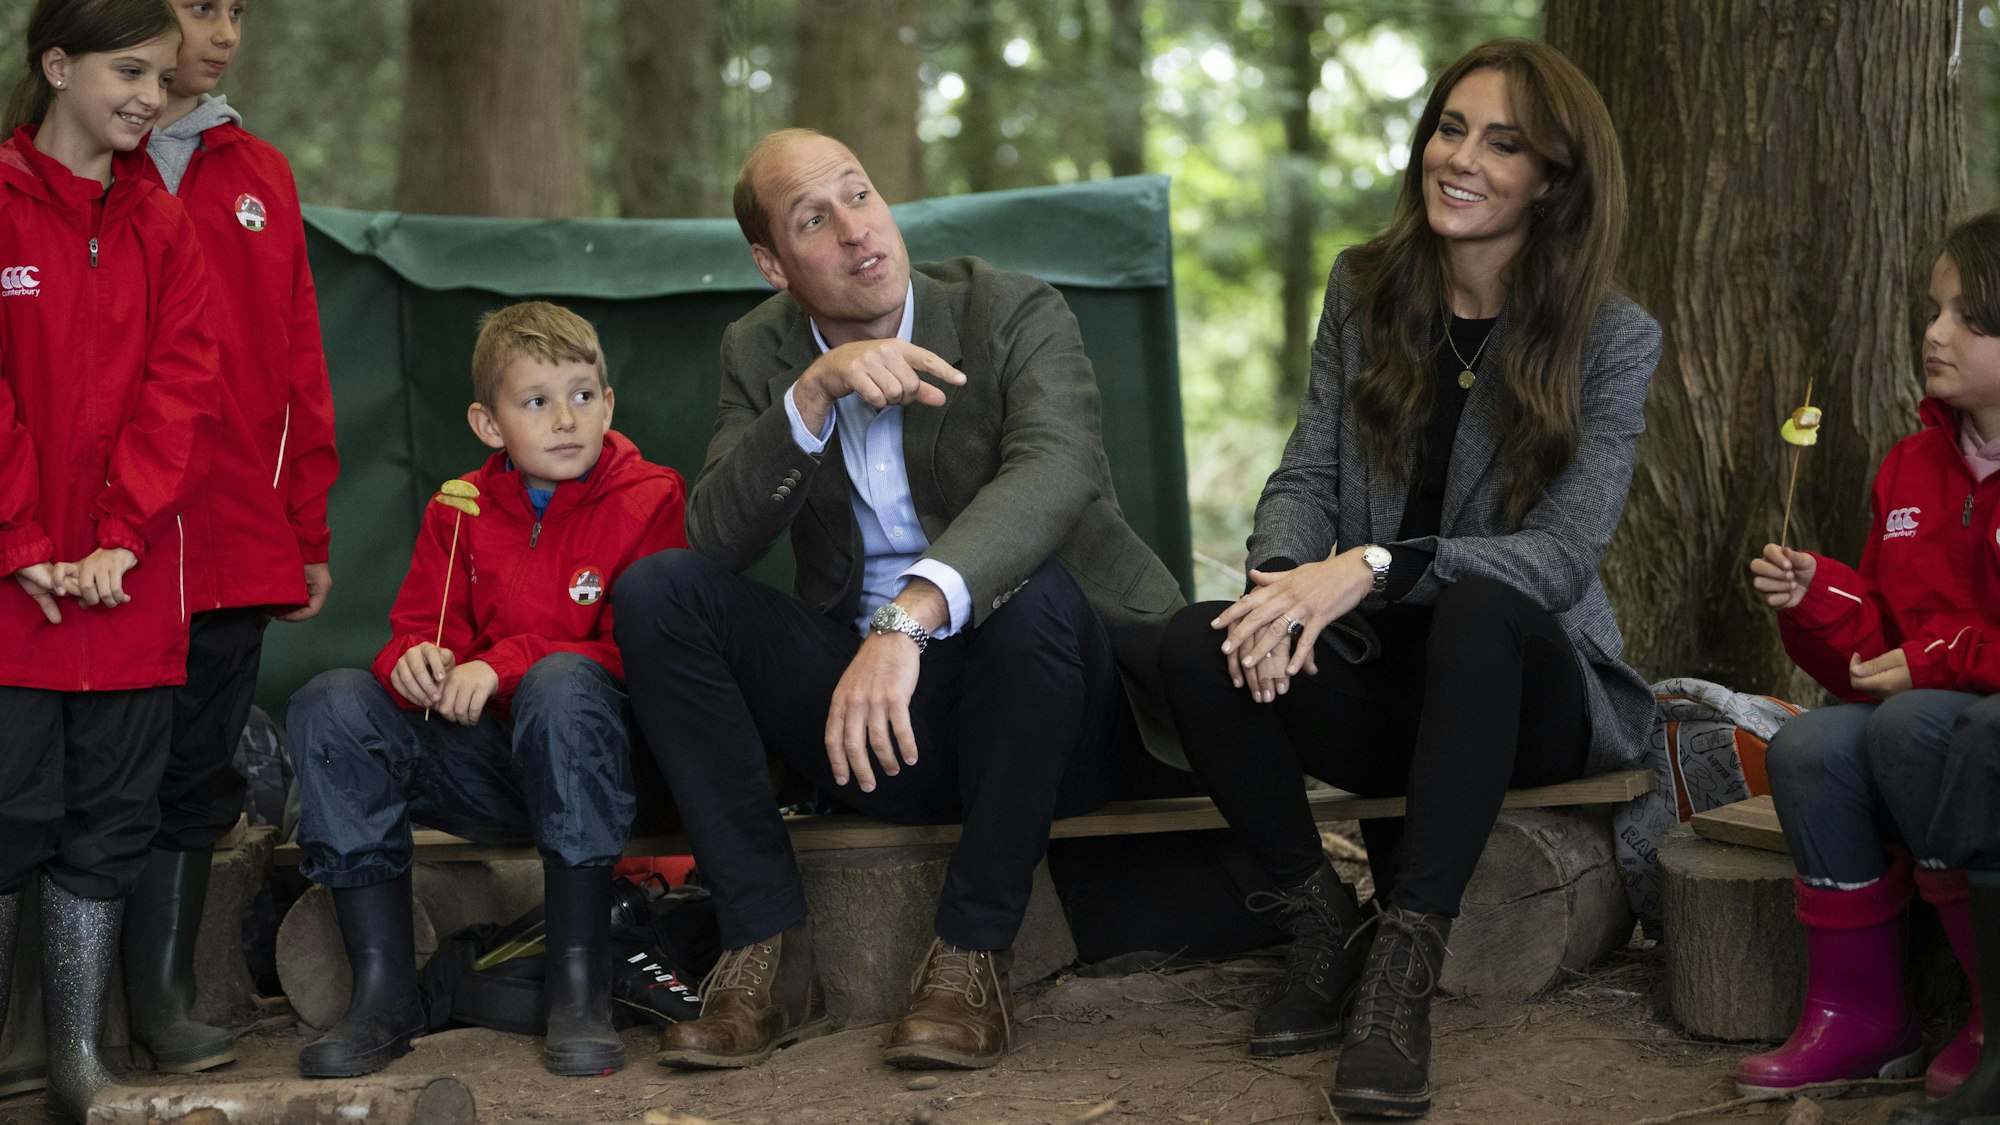 William, Prinz von Wales, und Kate, Prinzessin von Wales, besuchen die Madley-Grundschule, um sich deren Waldschule anzusehen – am selben Tag, als Harry sich mit NATO-Vertretern trifft.